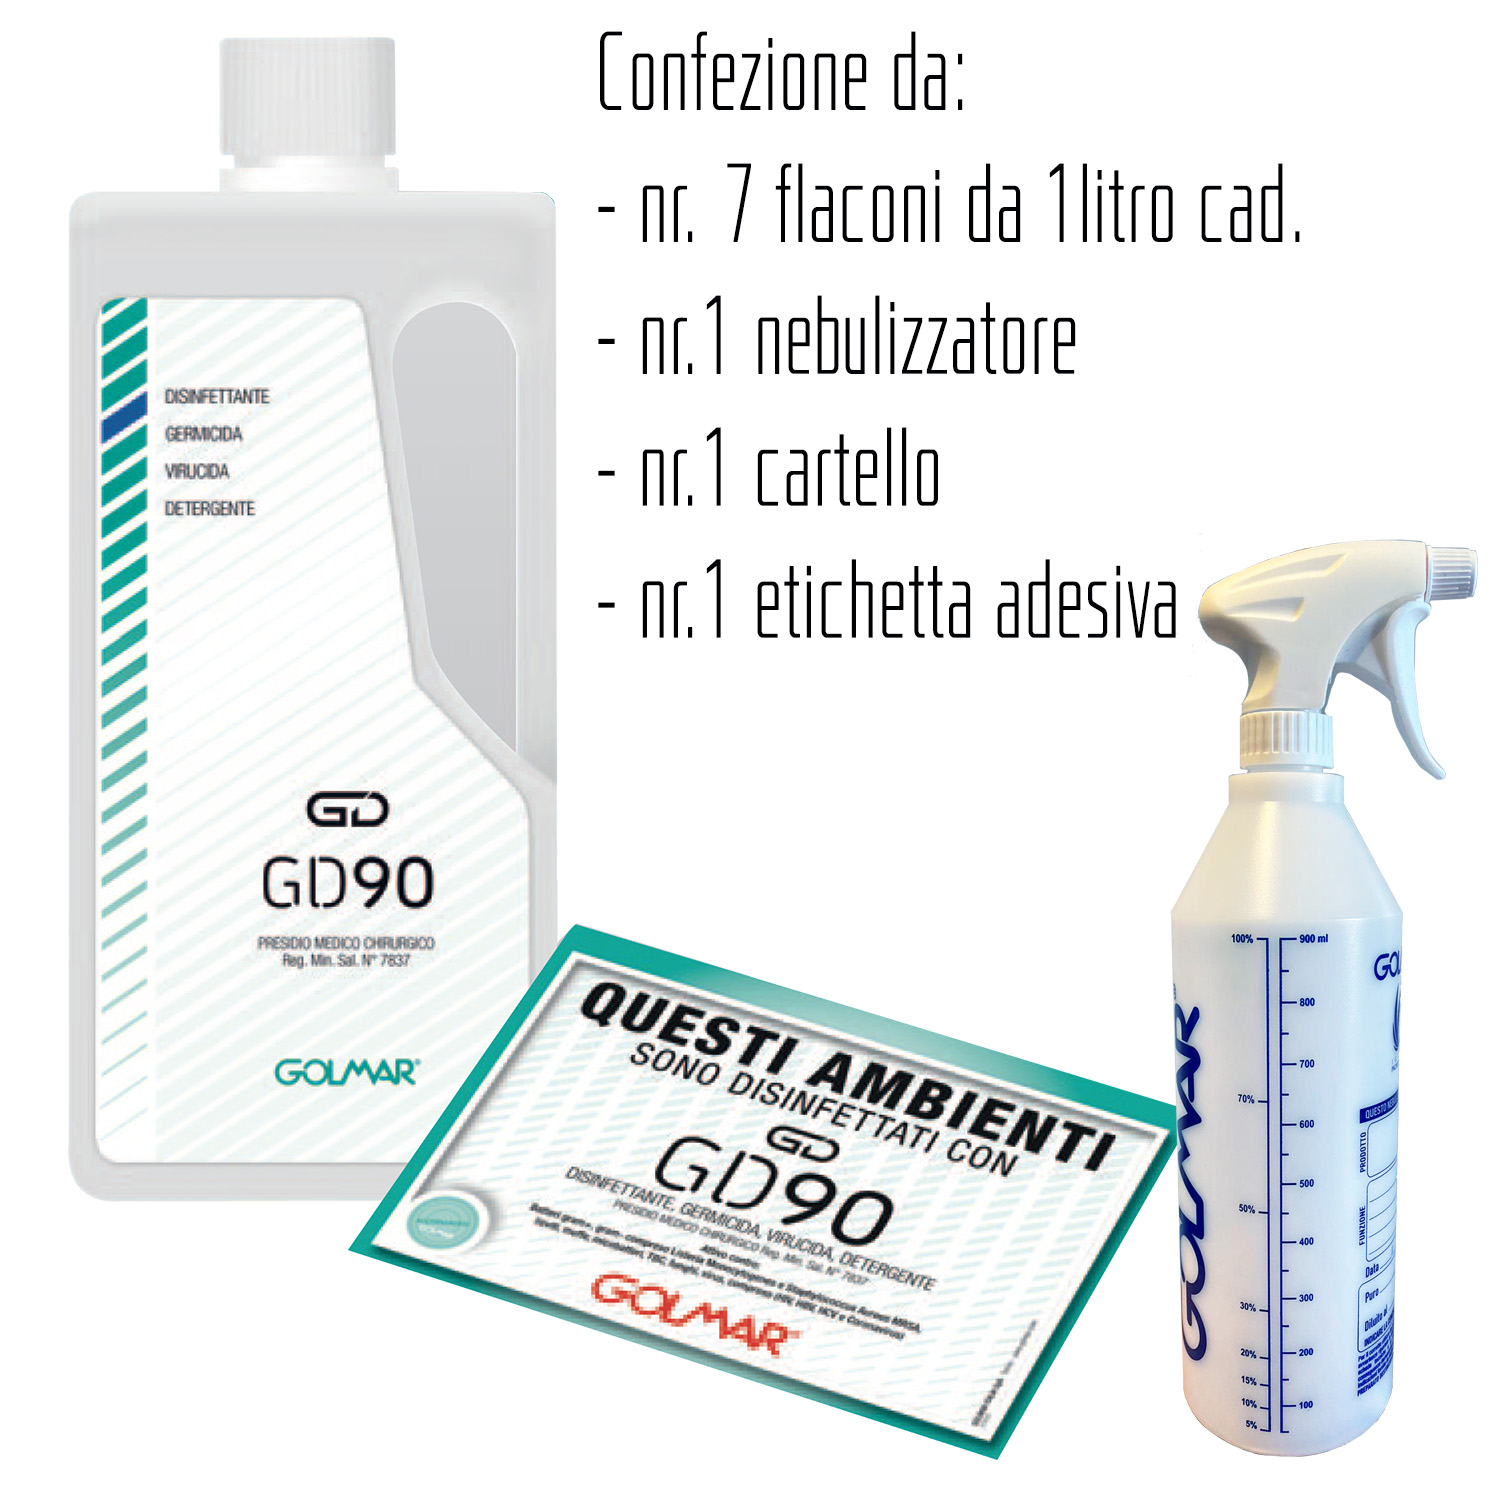 GOLMAR GD90 liquido 1 litro - PMC disinfettante professionale ad ampio spettro (virucida, battericida e levuricida) – confezione da  7 flaconi da 1litro cad.,  n.1 nebulizzatore, n.1 cartello n.1 etichetta